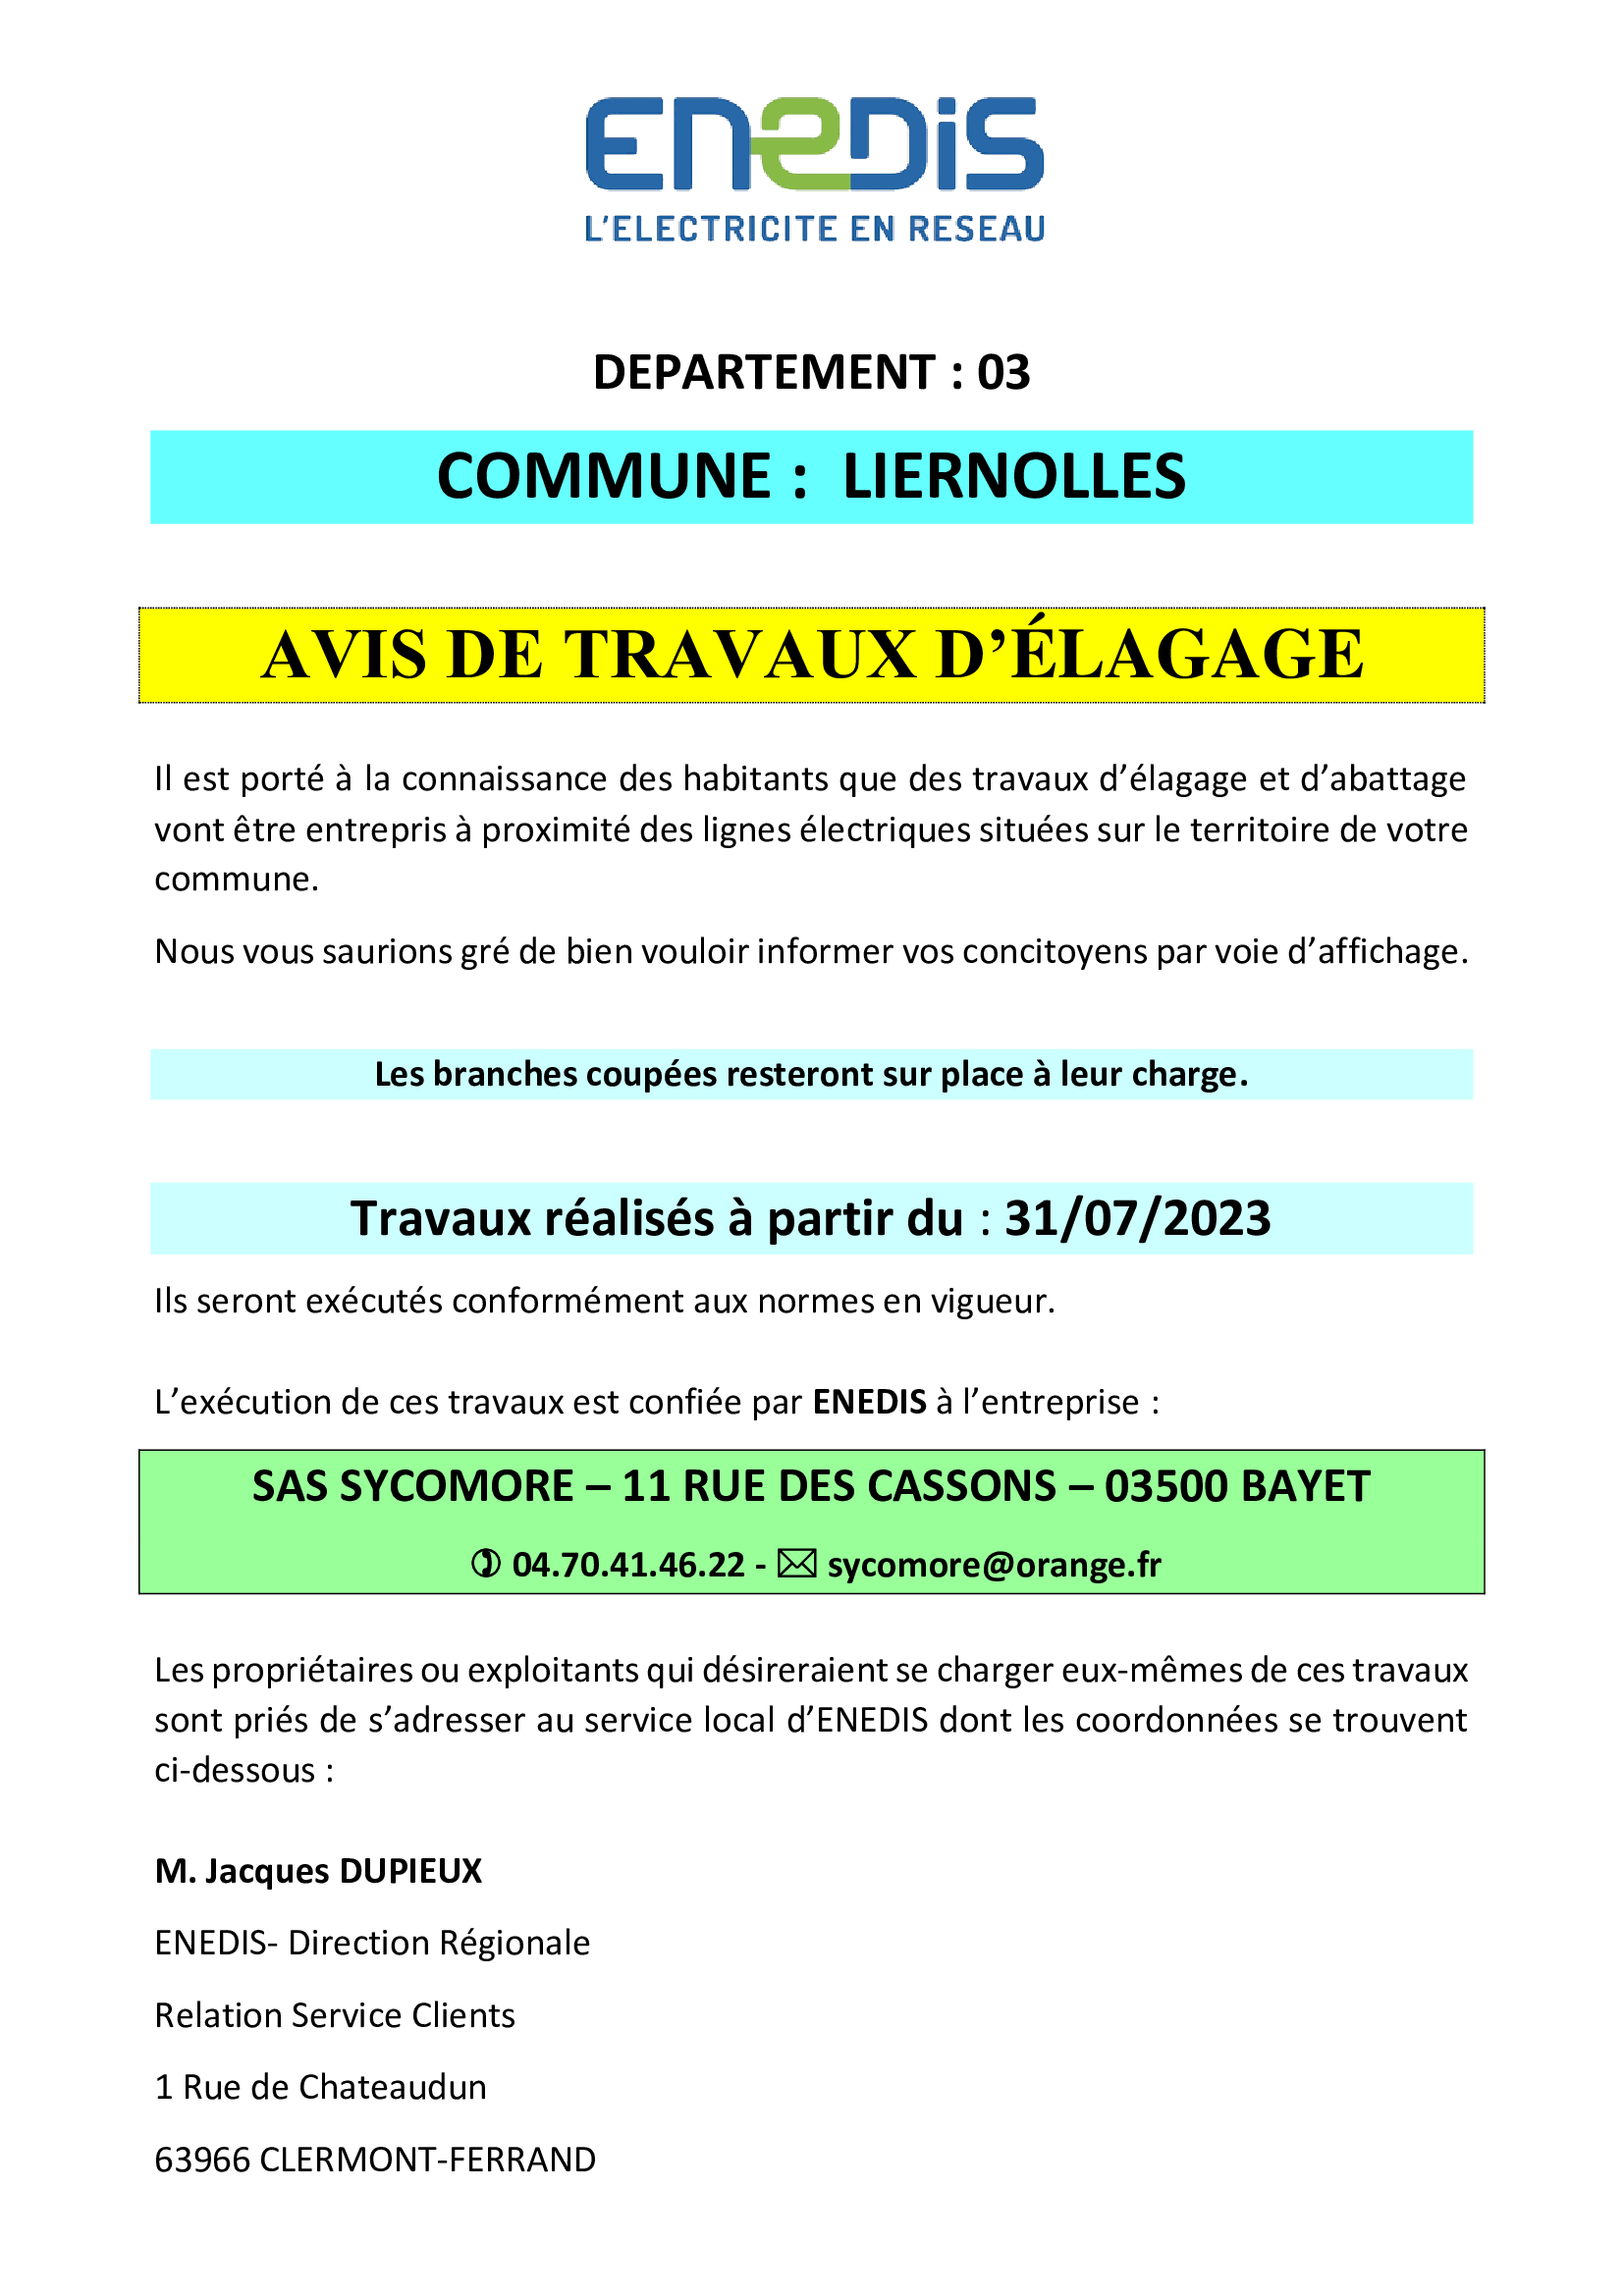 A partir du 31/07/2023 Elagage sur la commune de Liernolles